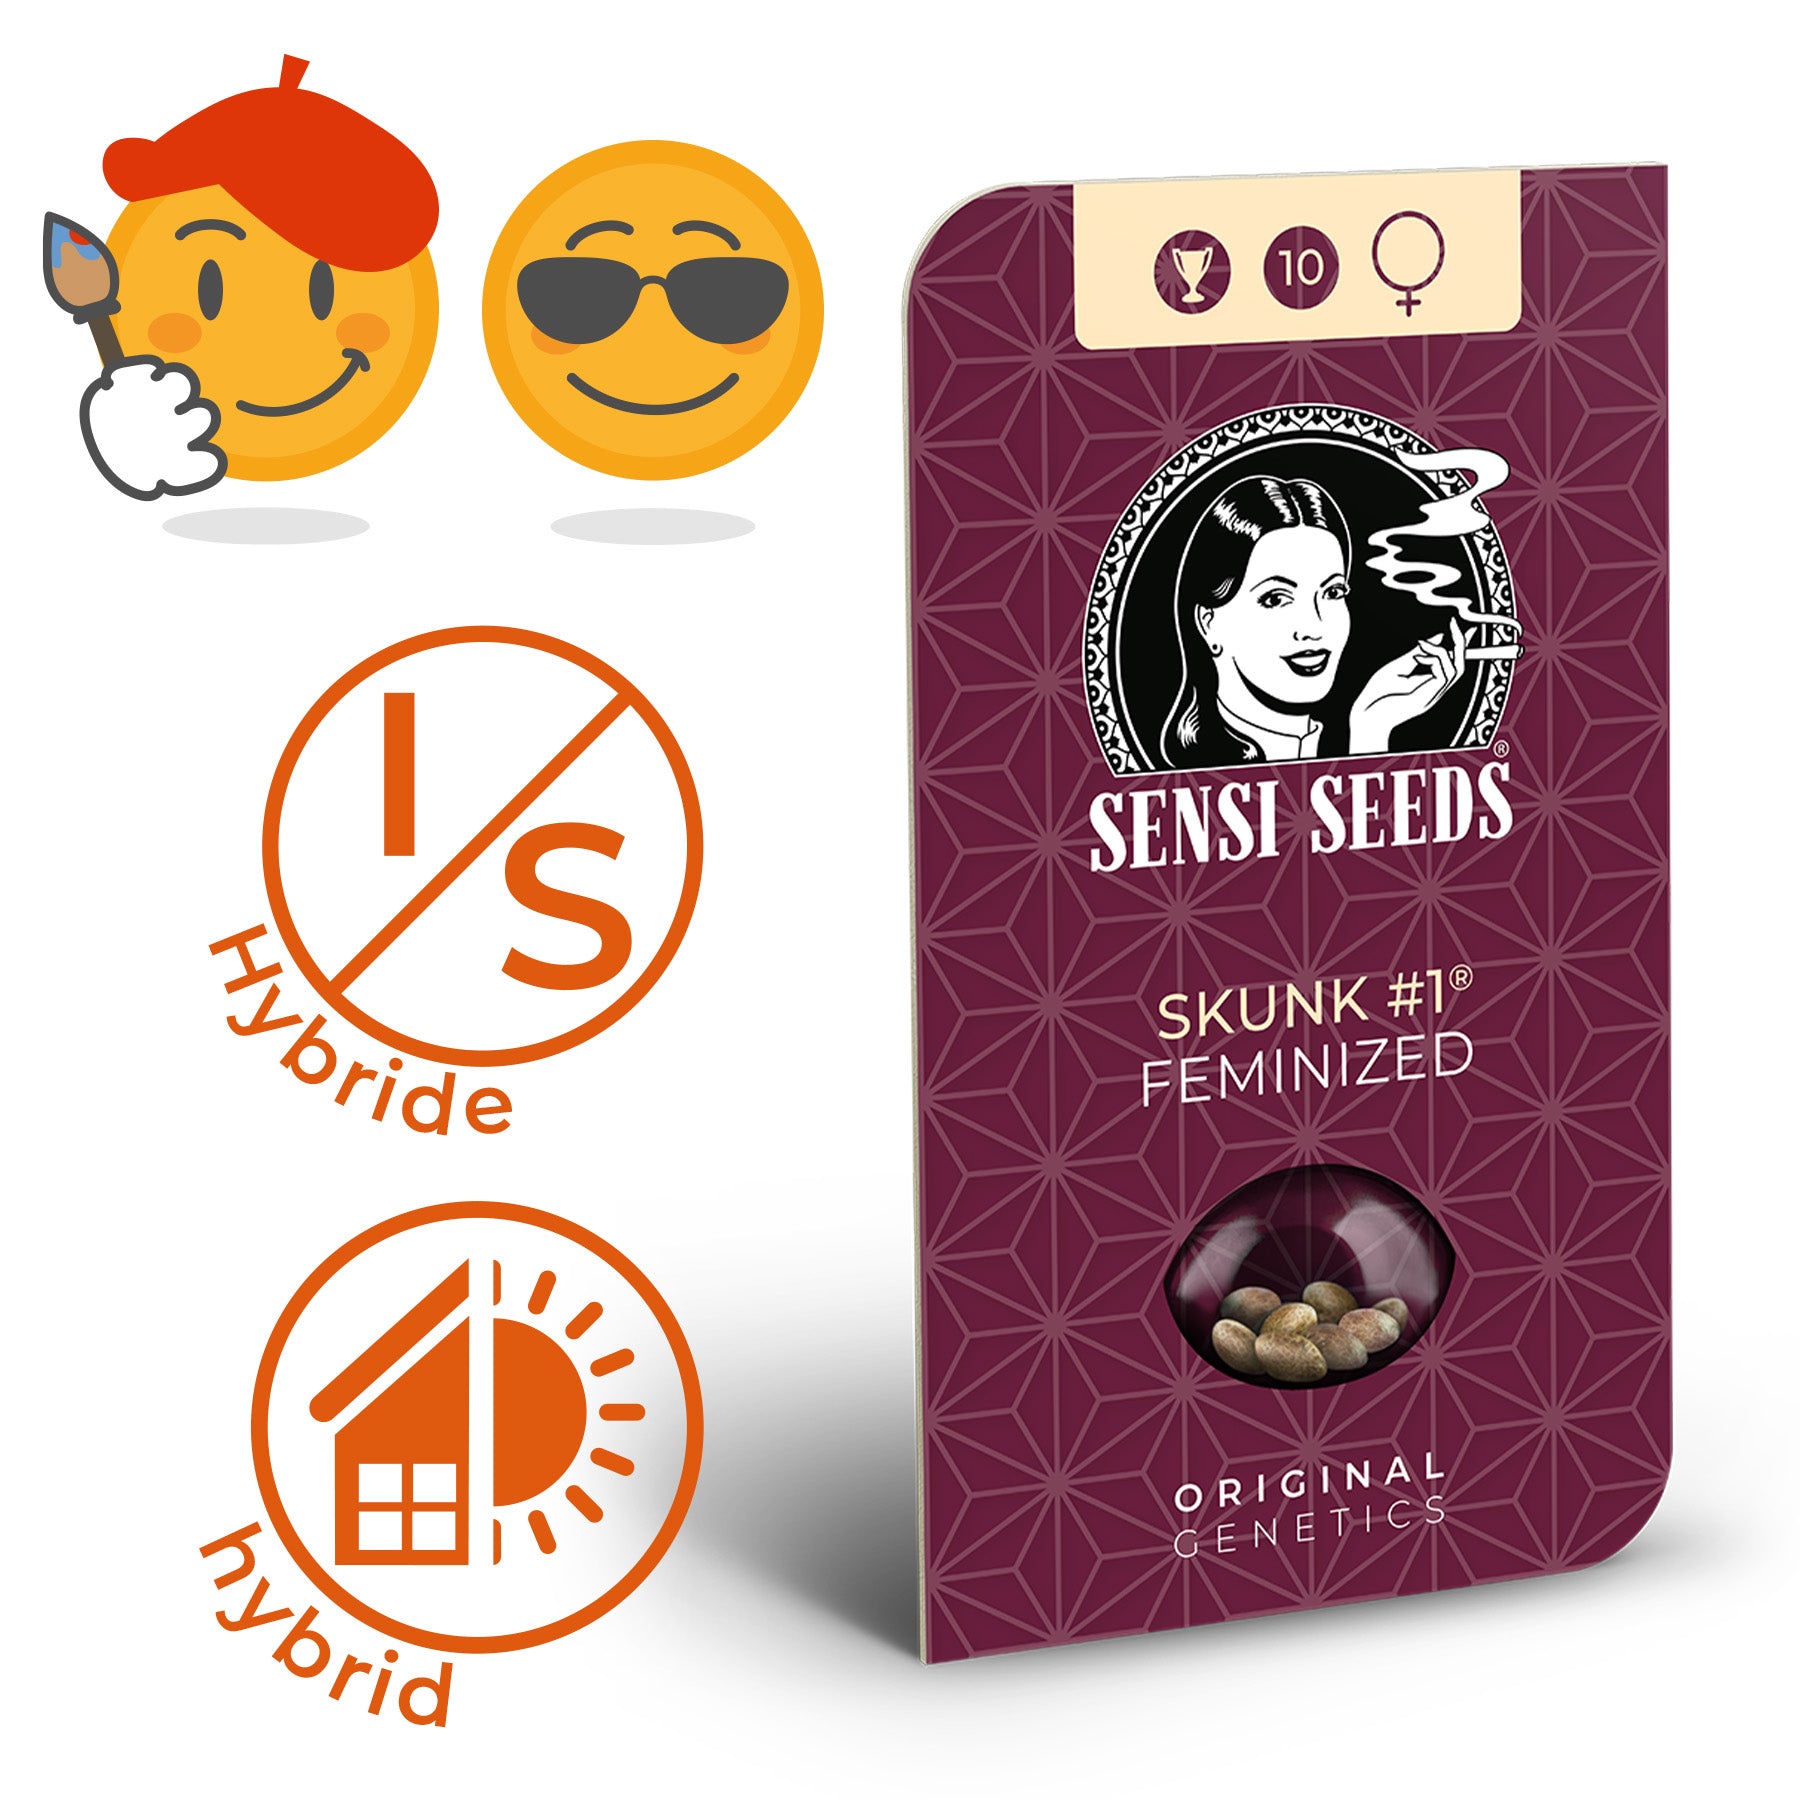 Skunk #1 Feminized Hanfsamen bzw. Cannabis Samen mit Beschreibung der Wirkung (kreativ, entspannend) und Sorte (Hybrid)